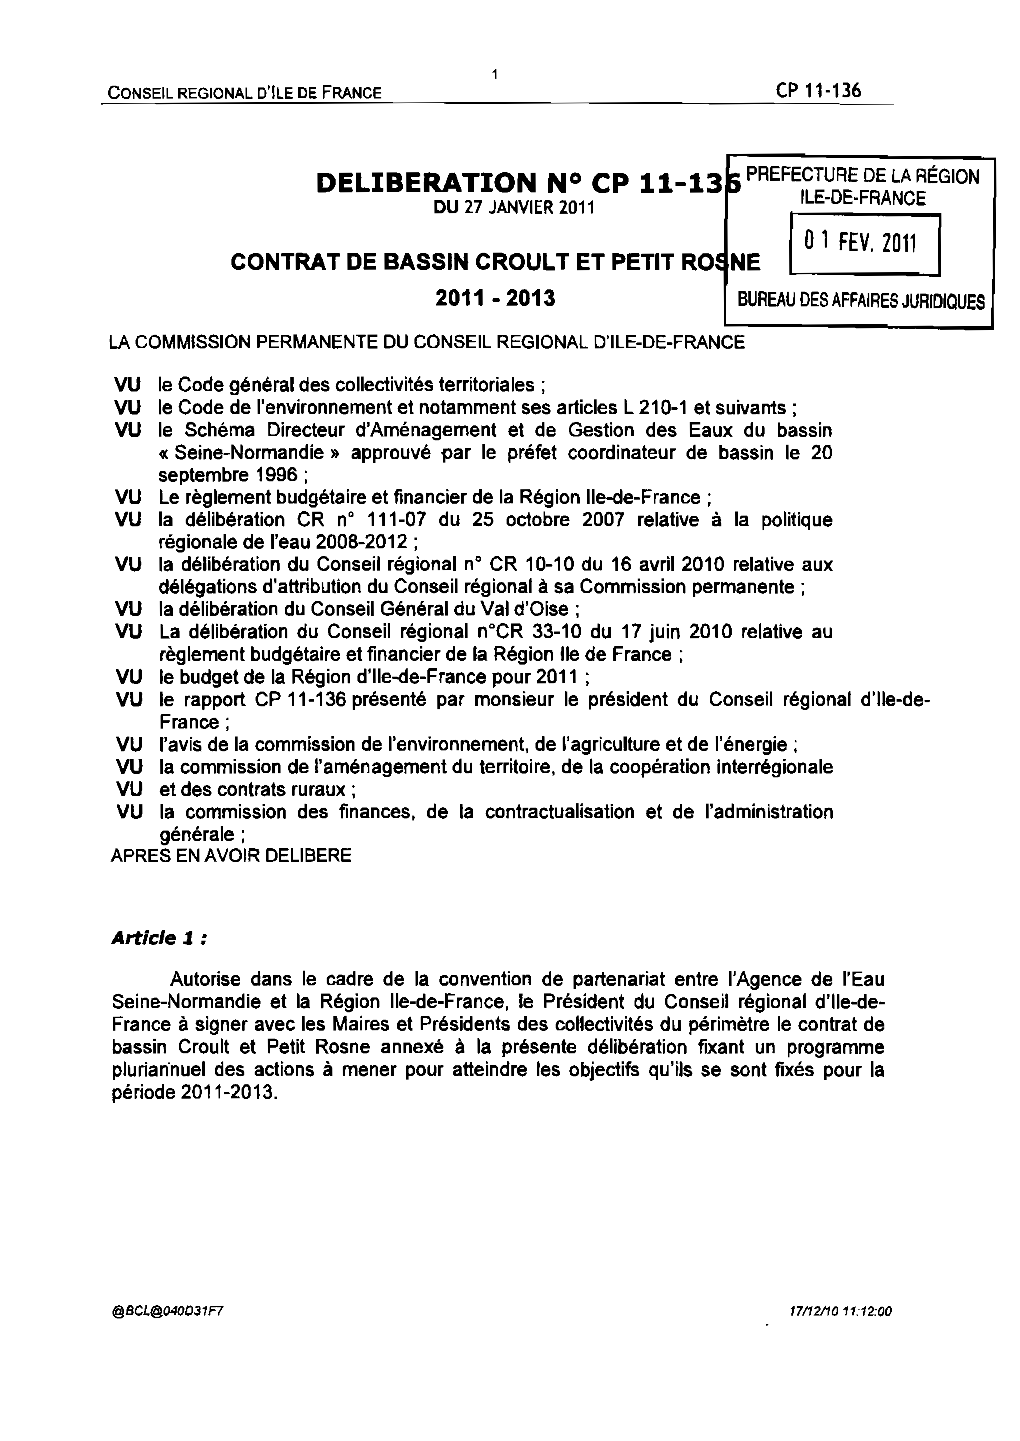 Annexe a La Deliberation : Contrat Croult Petit Rosne